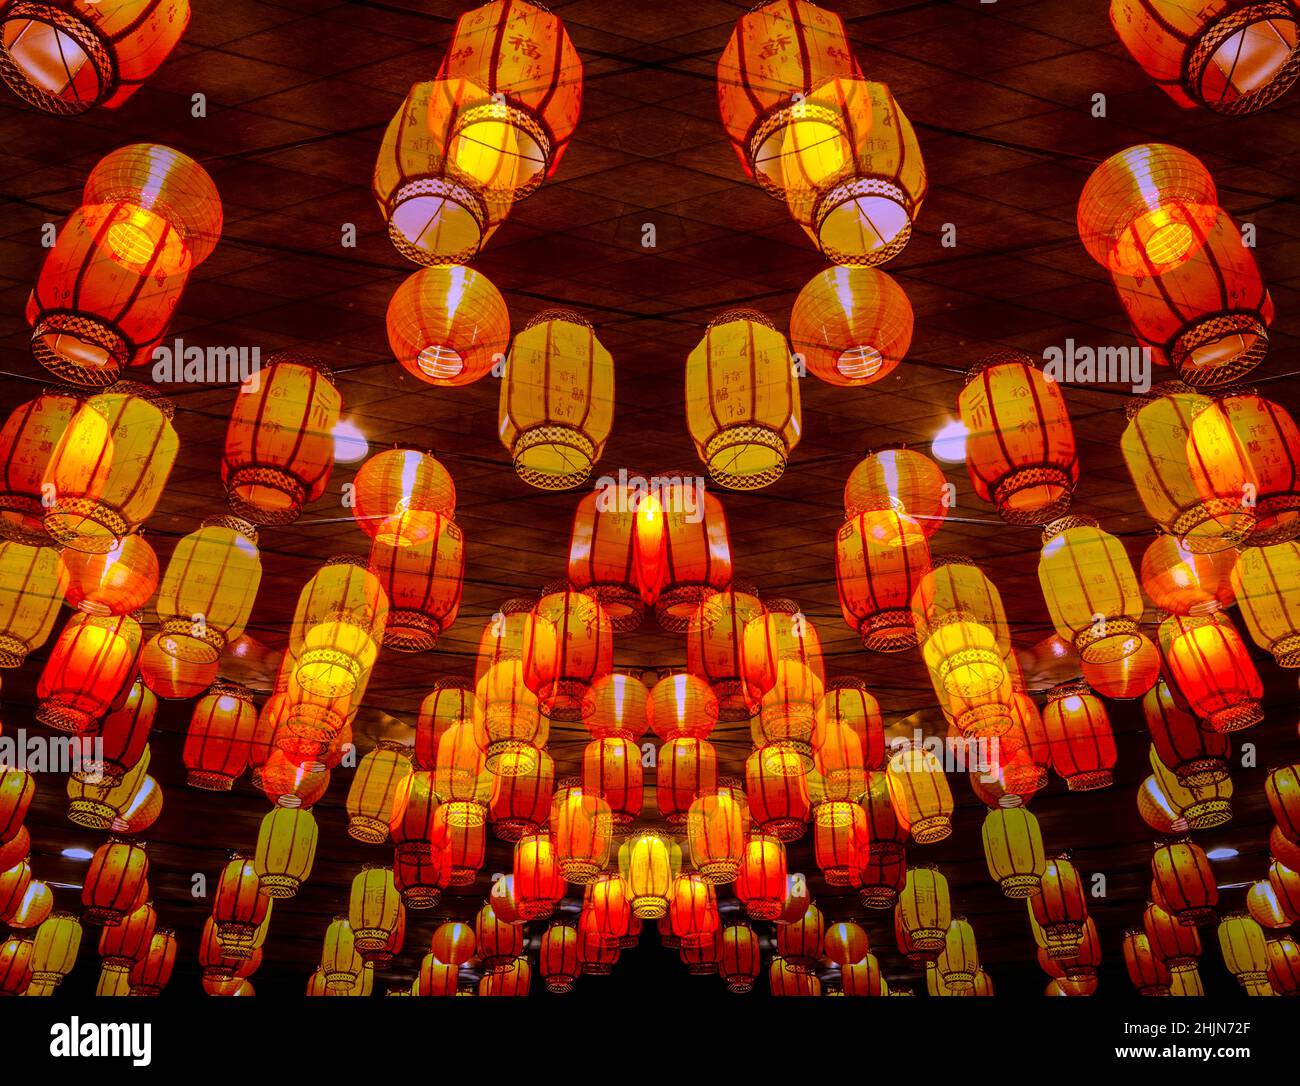 Chinese New Year lanterns, Hong Kong, China. Stock Photo